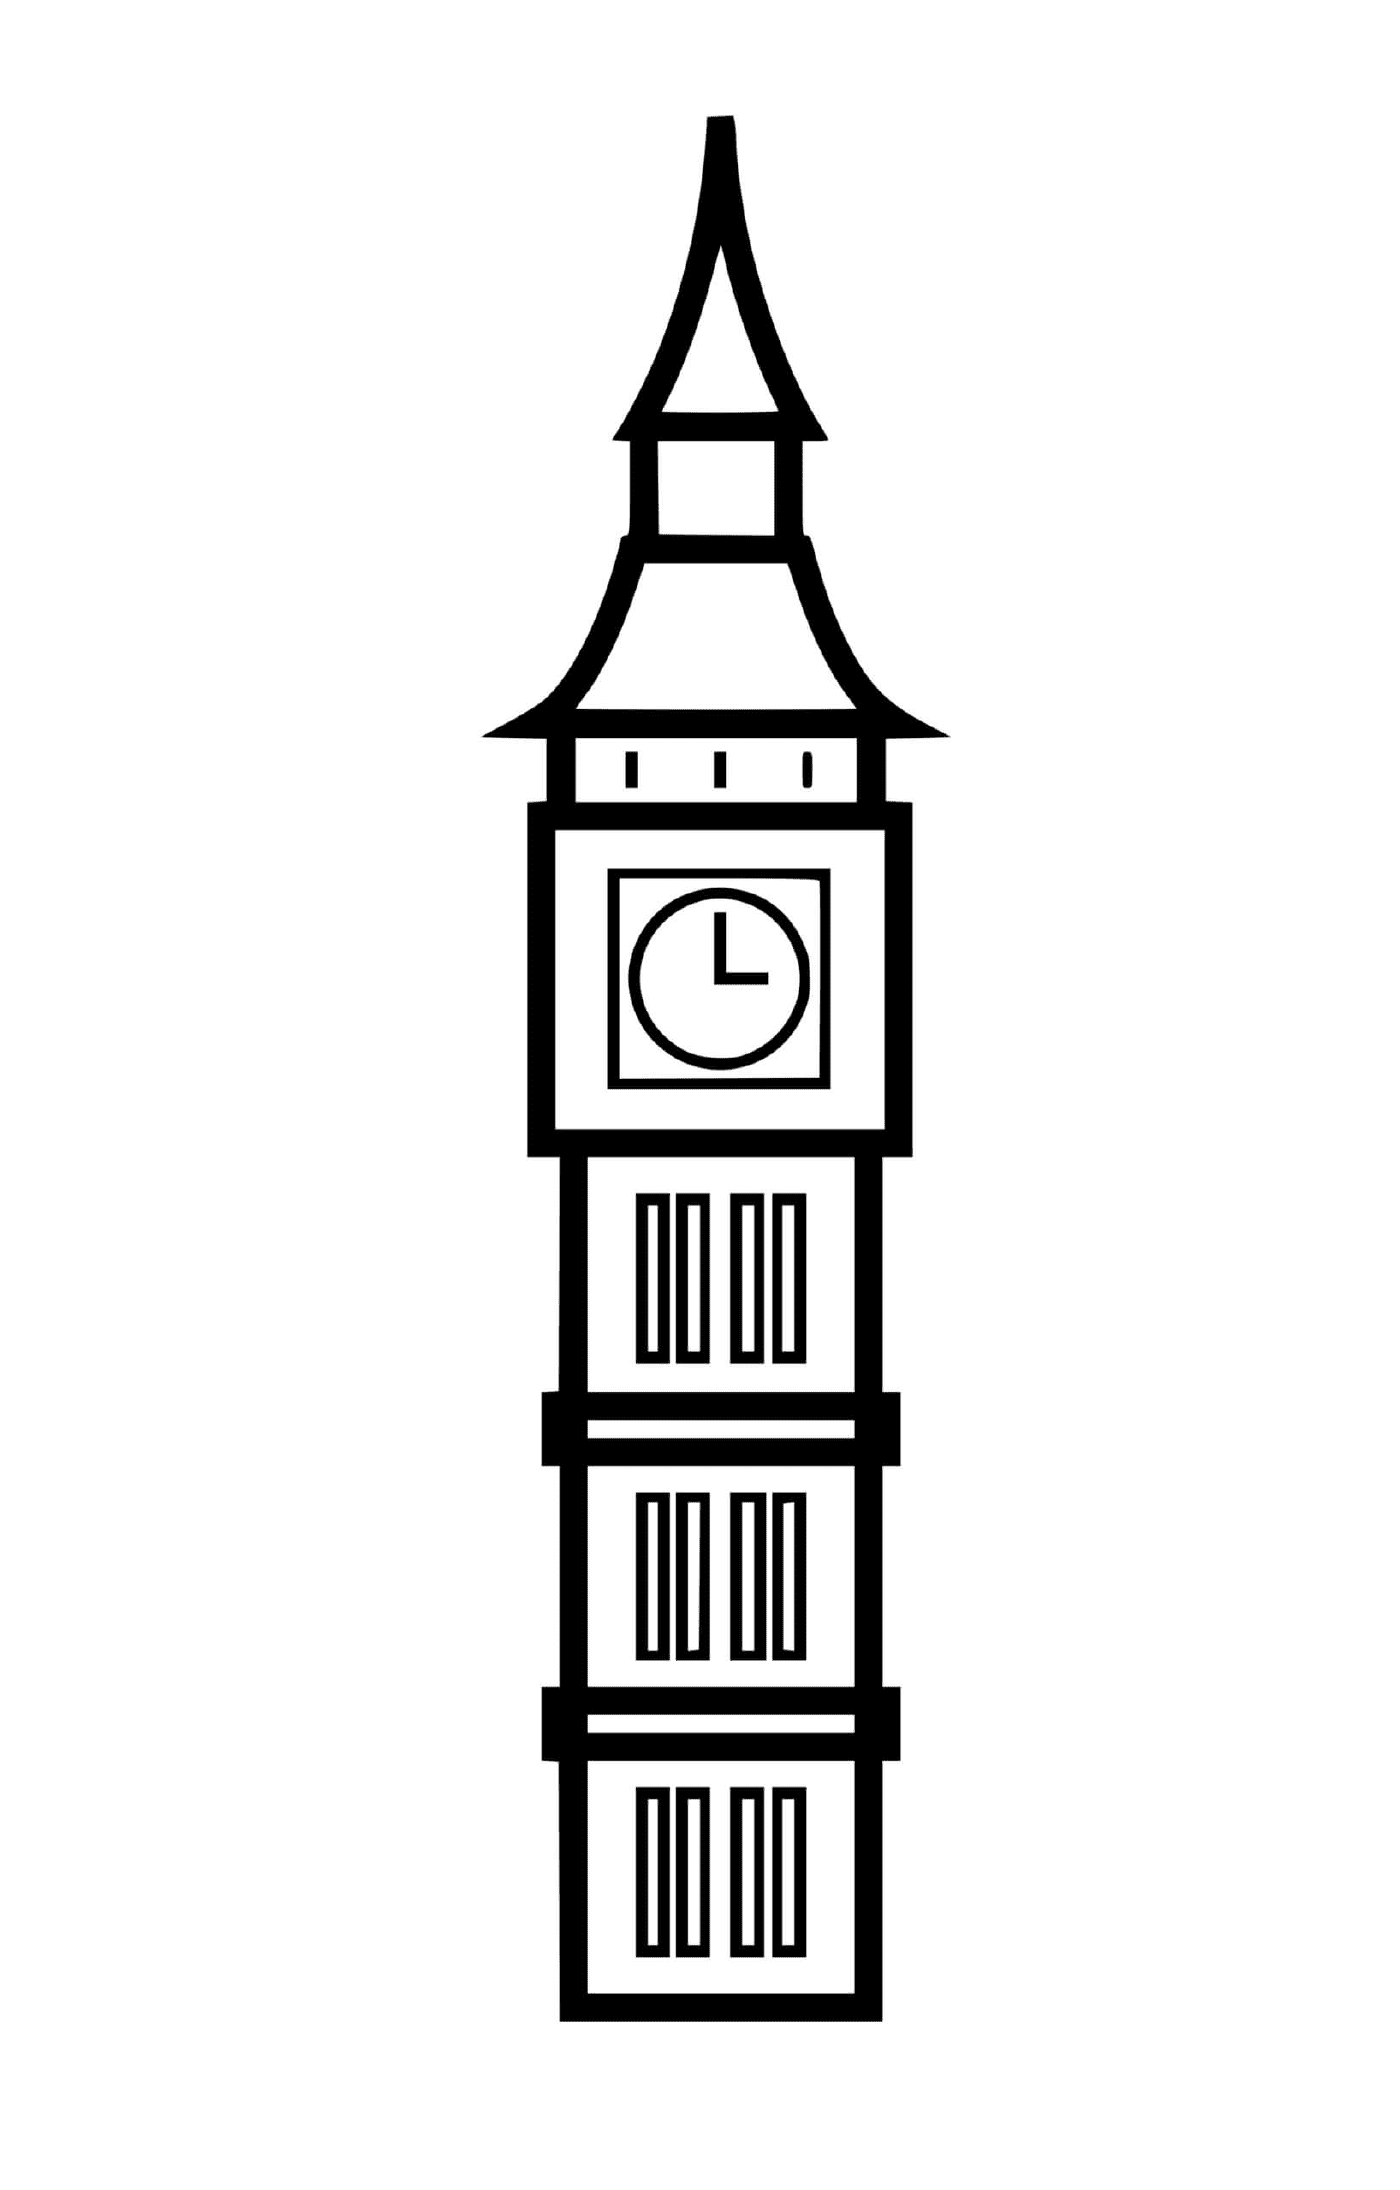  Big Ben a torre do relógio do palácio 